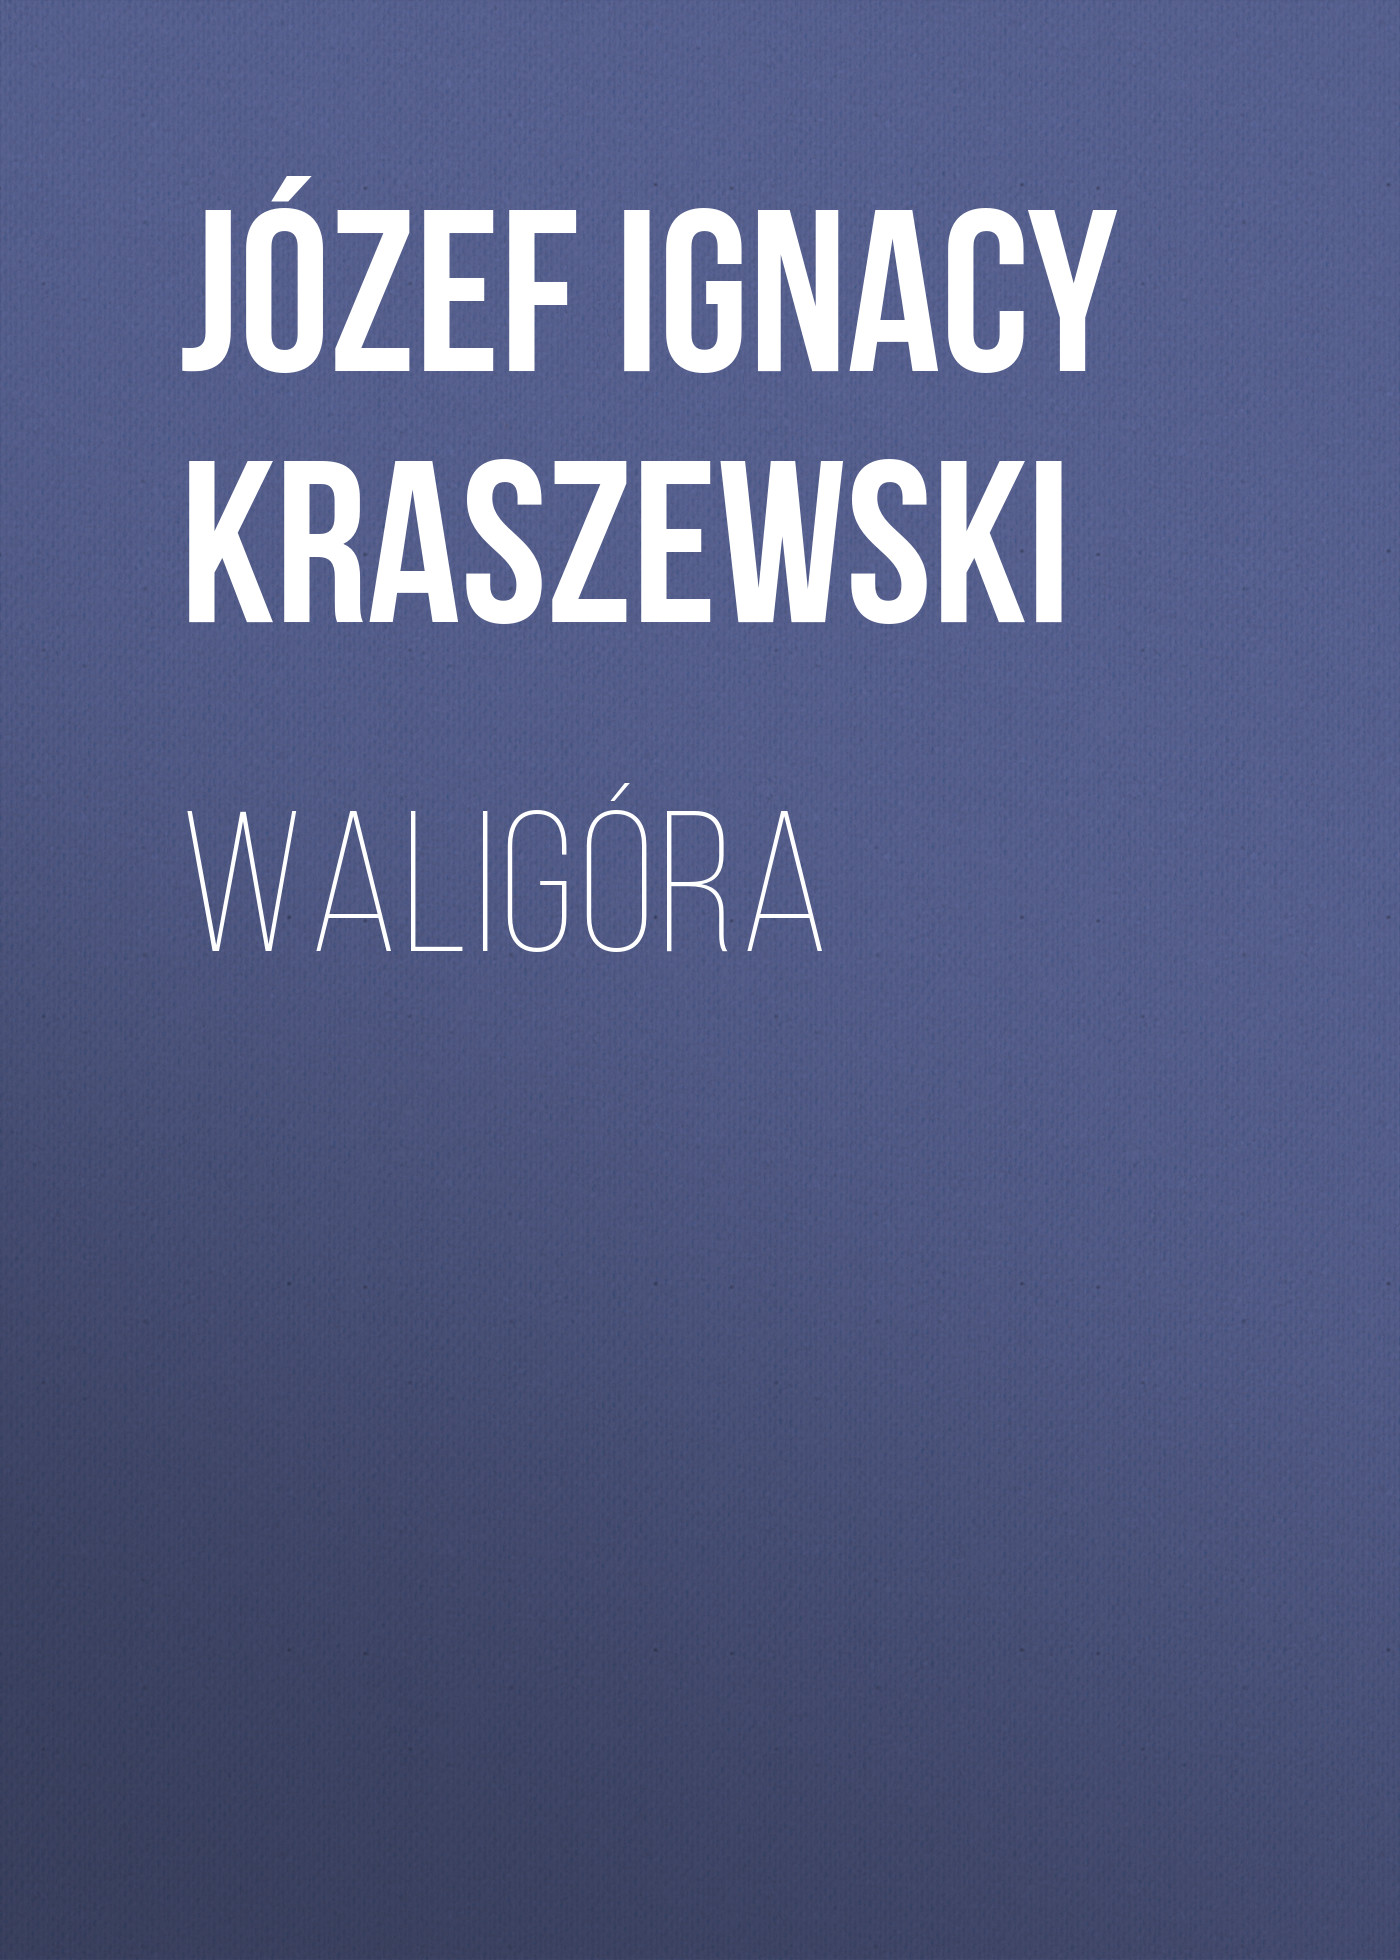 Скачать Waligóra - Józef Ignacy Kraszewski